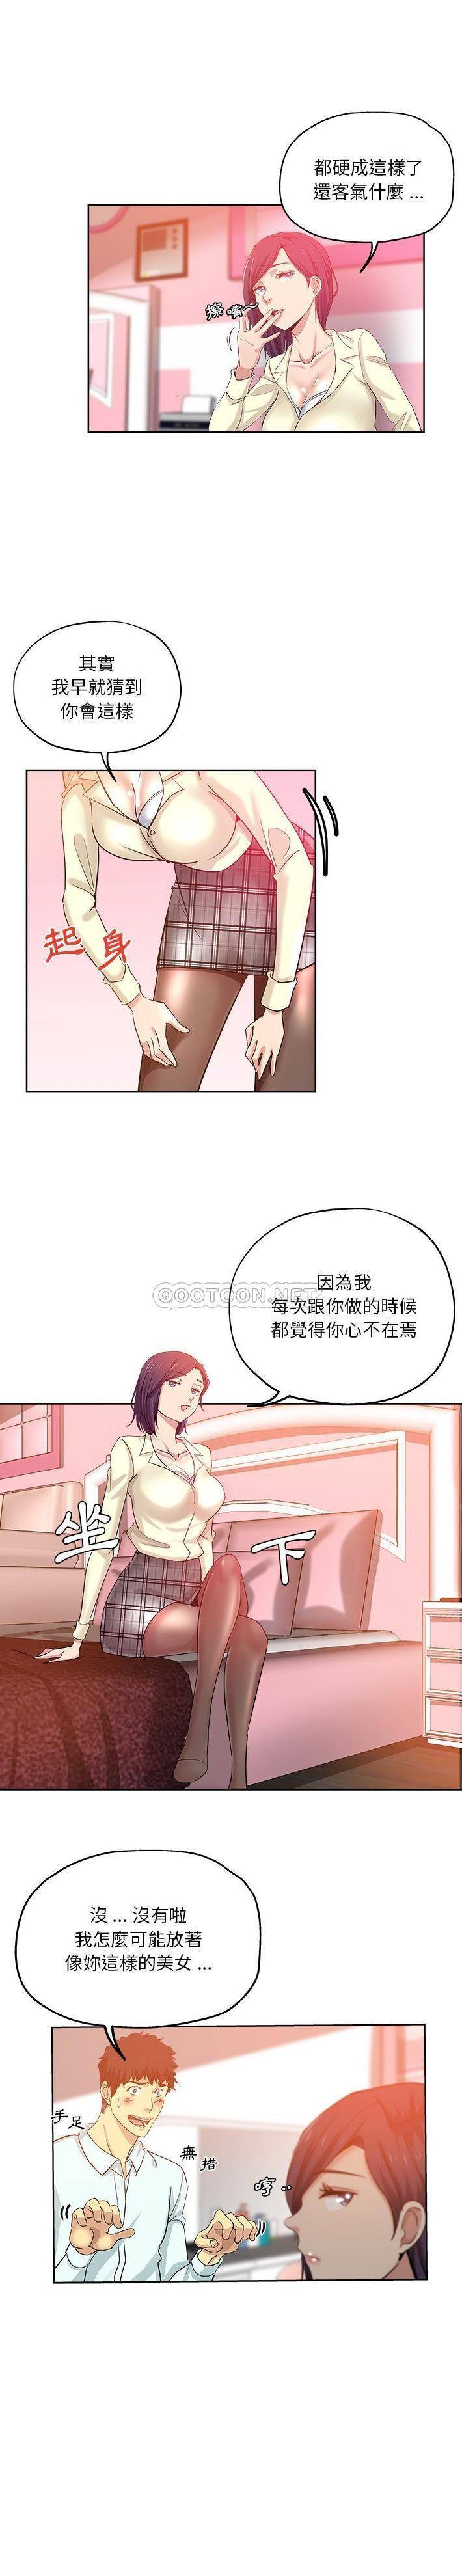 韩国污漫画 危險純友誼 第29话 8